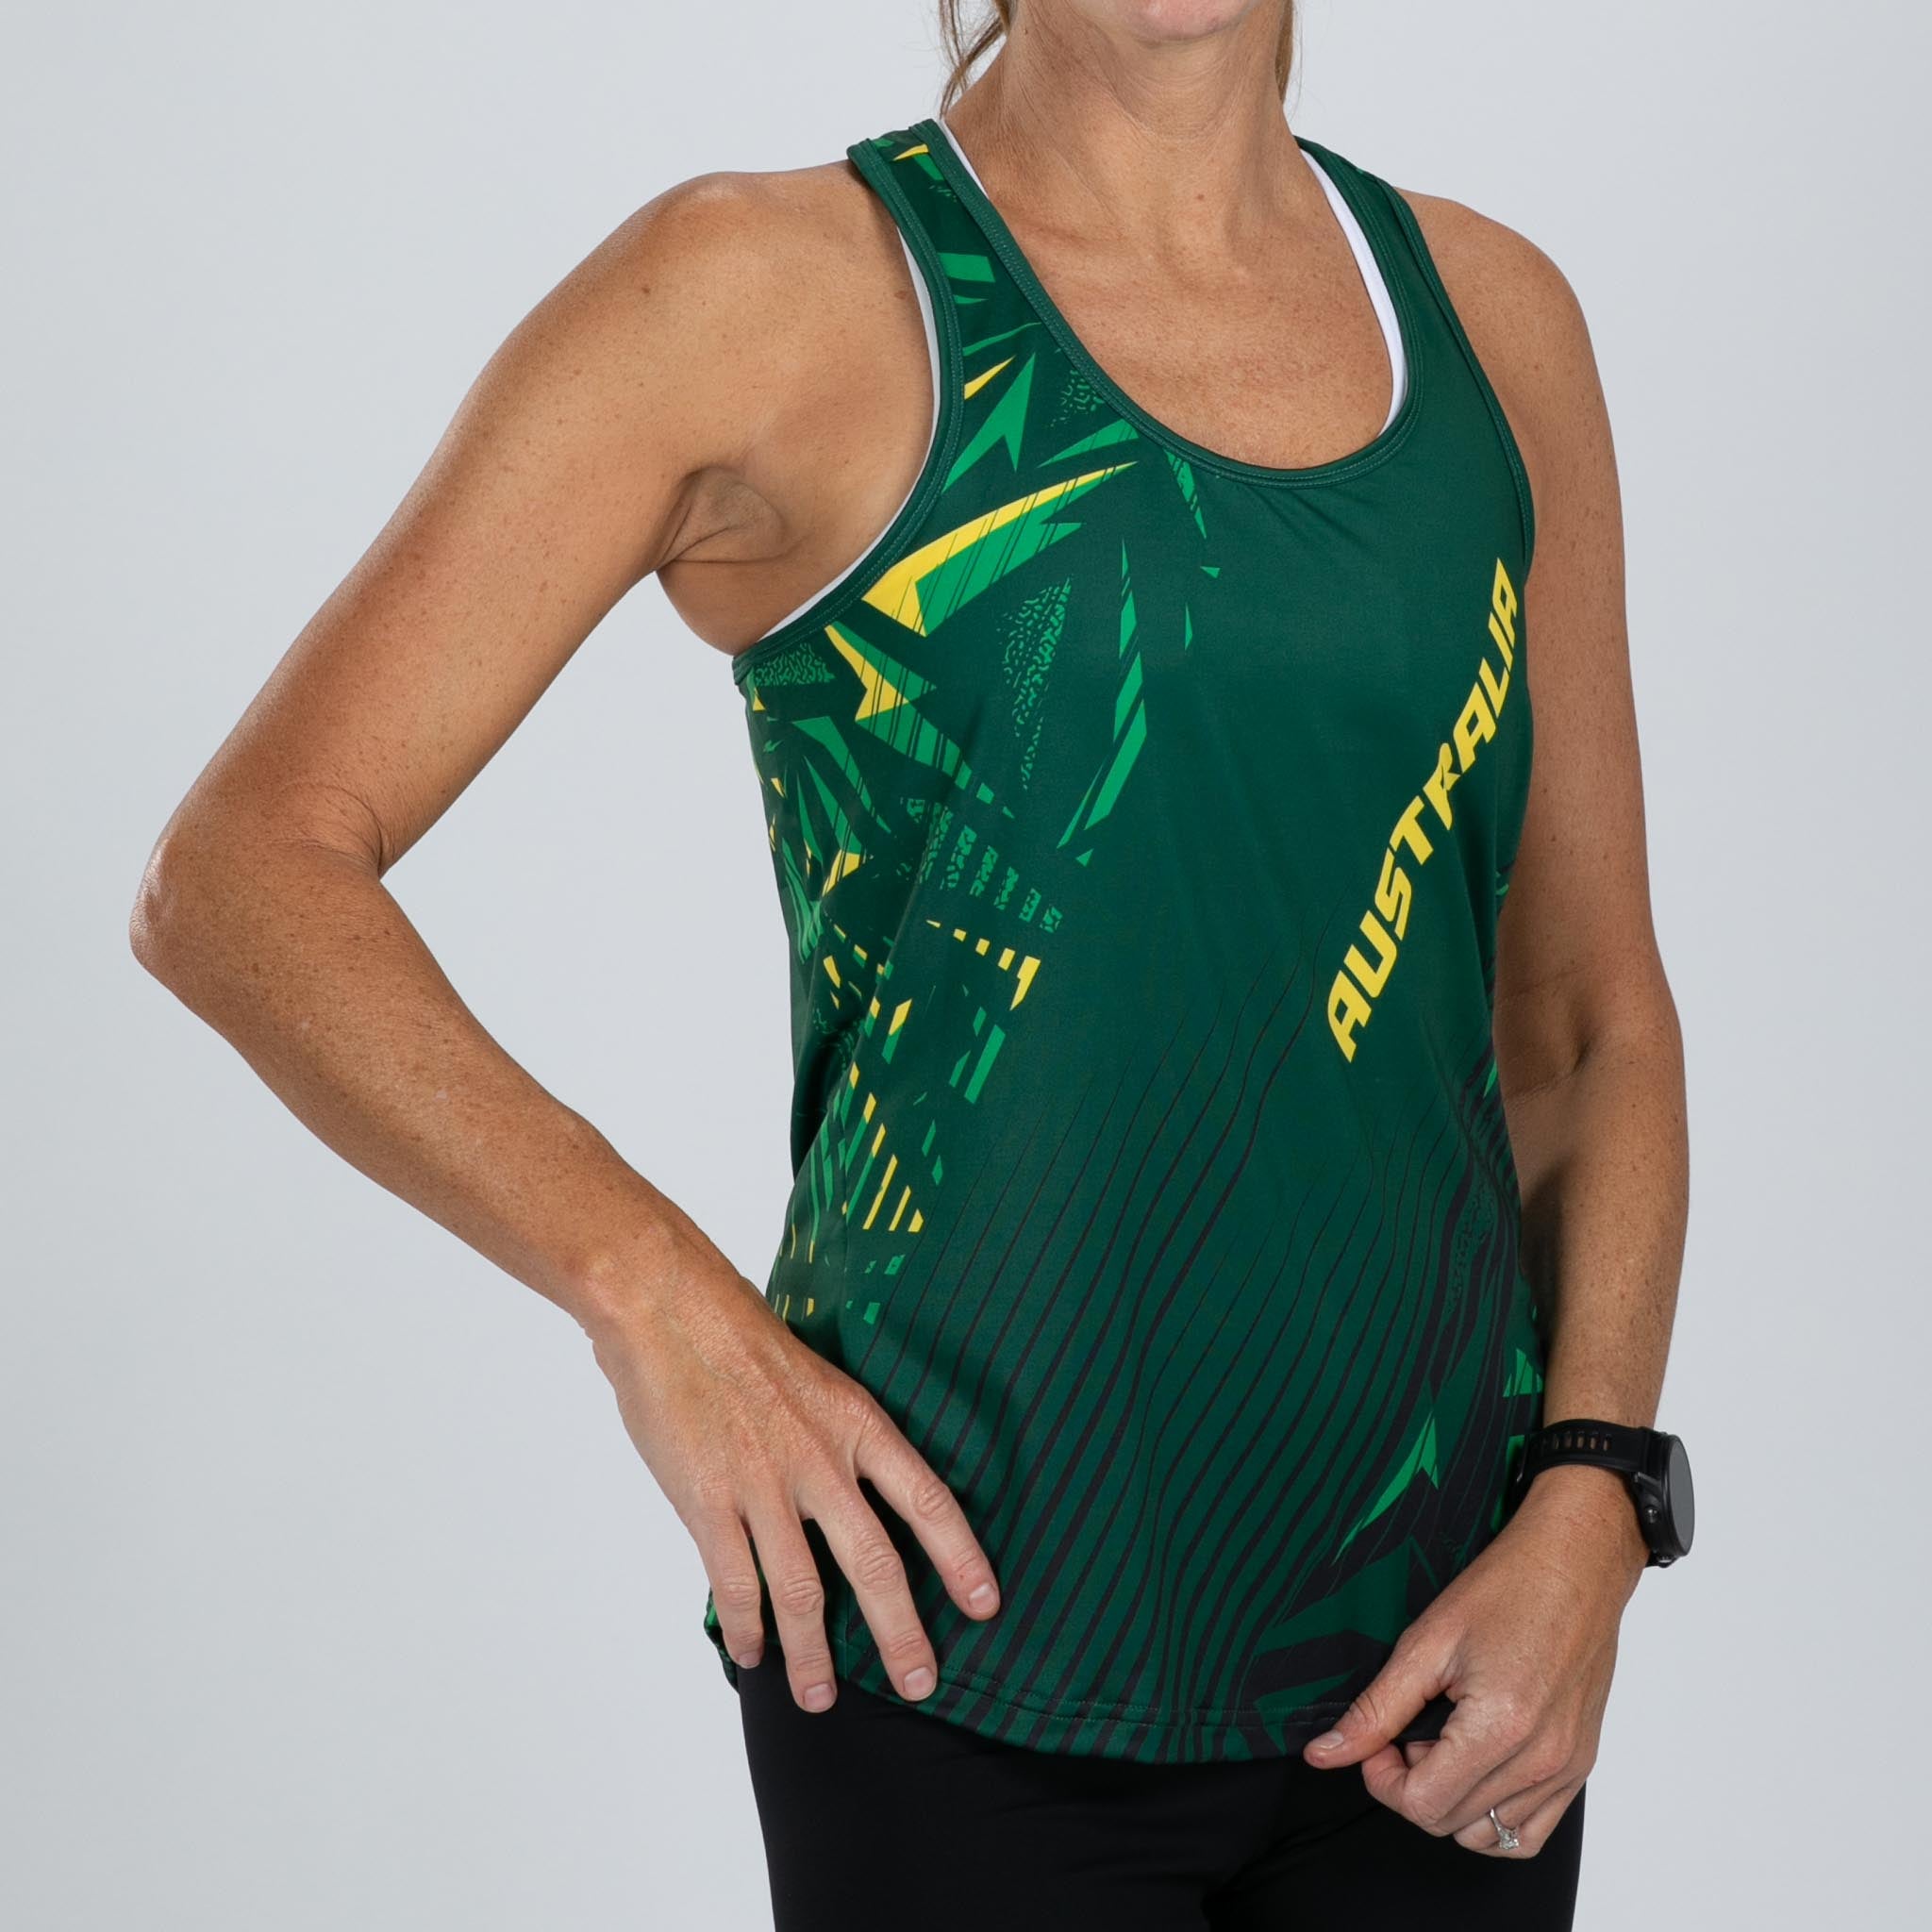 Zoot Sports RUN SINGLET Women's Ltd Run Singlet - Australia